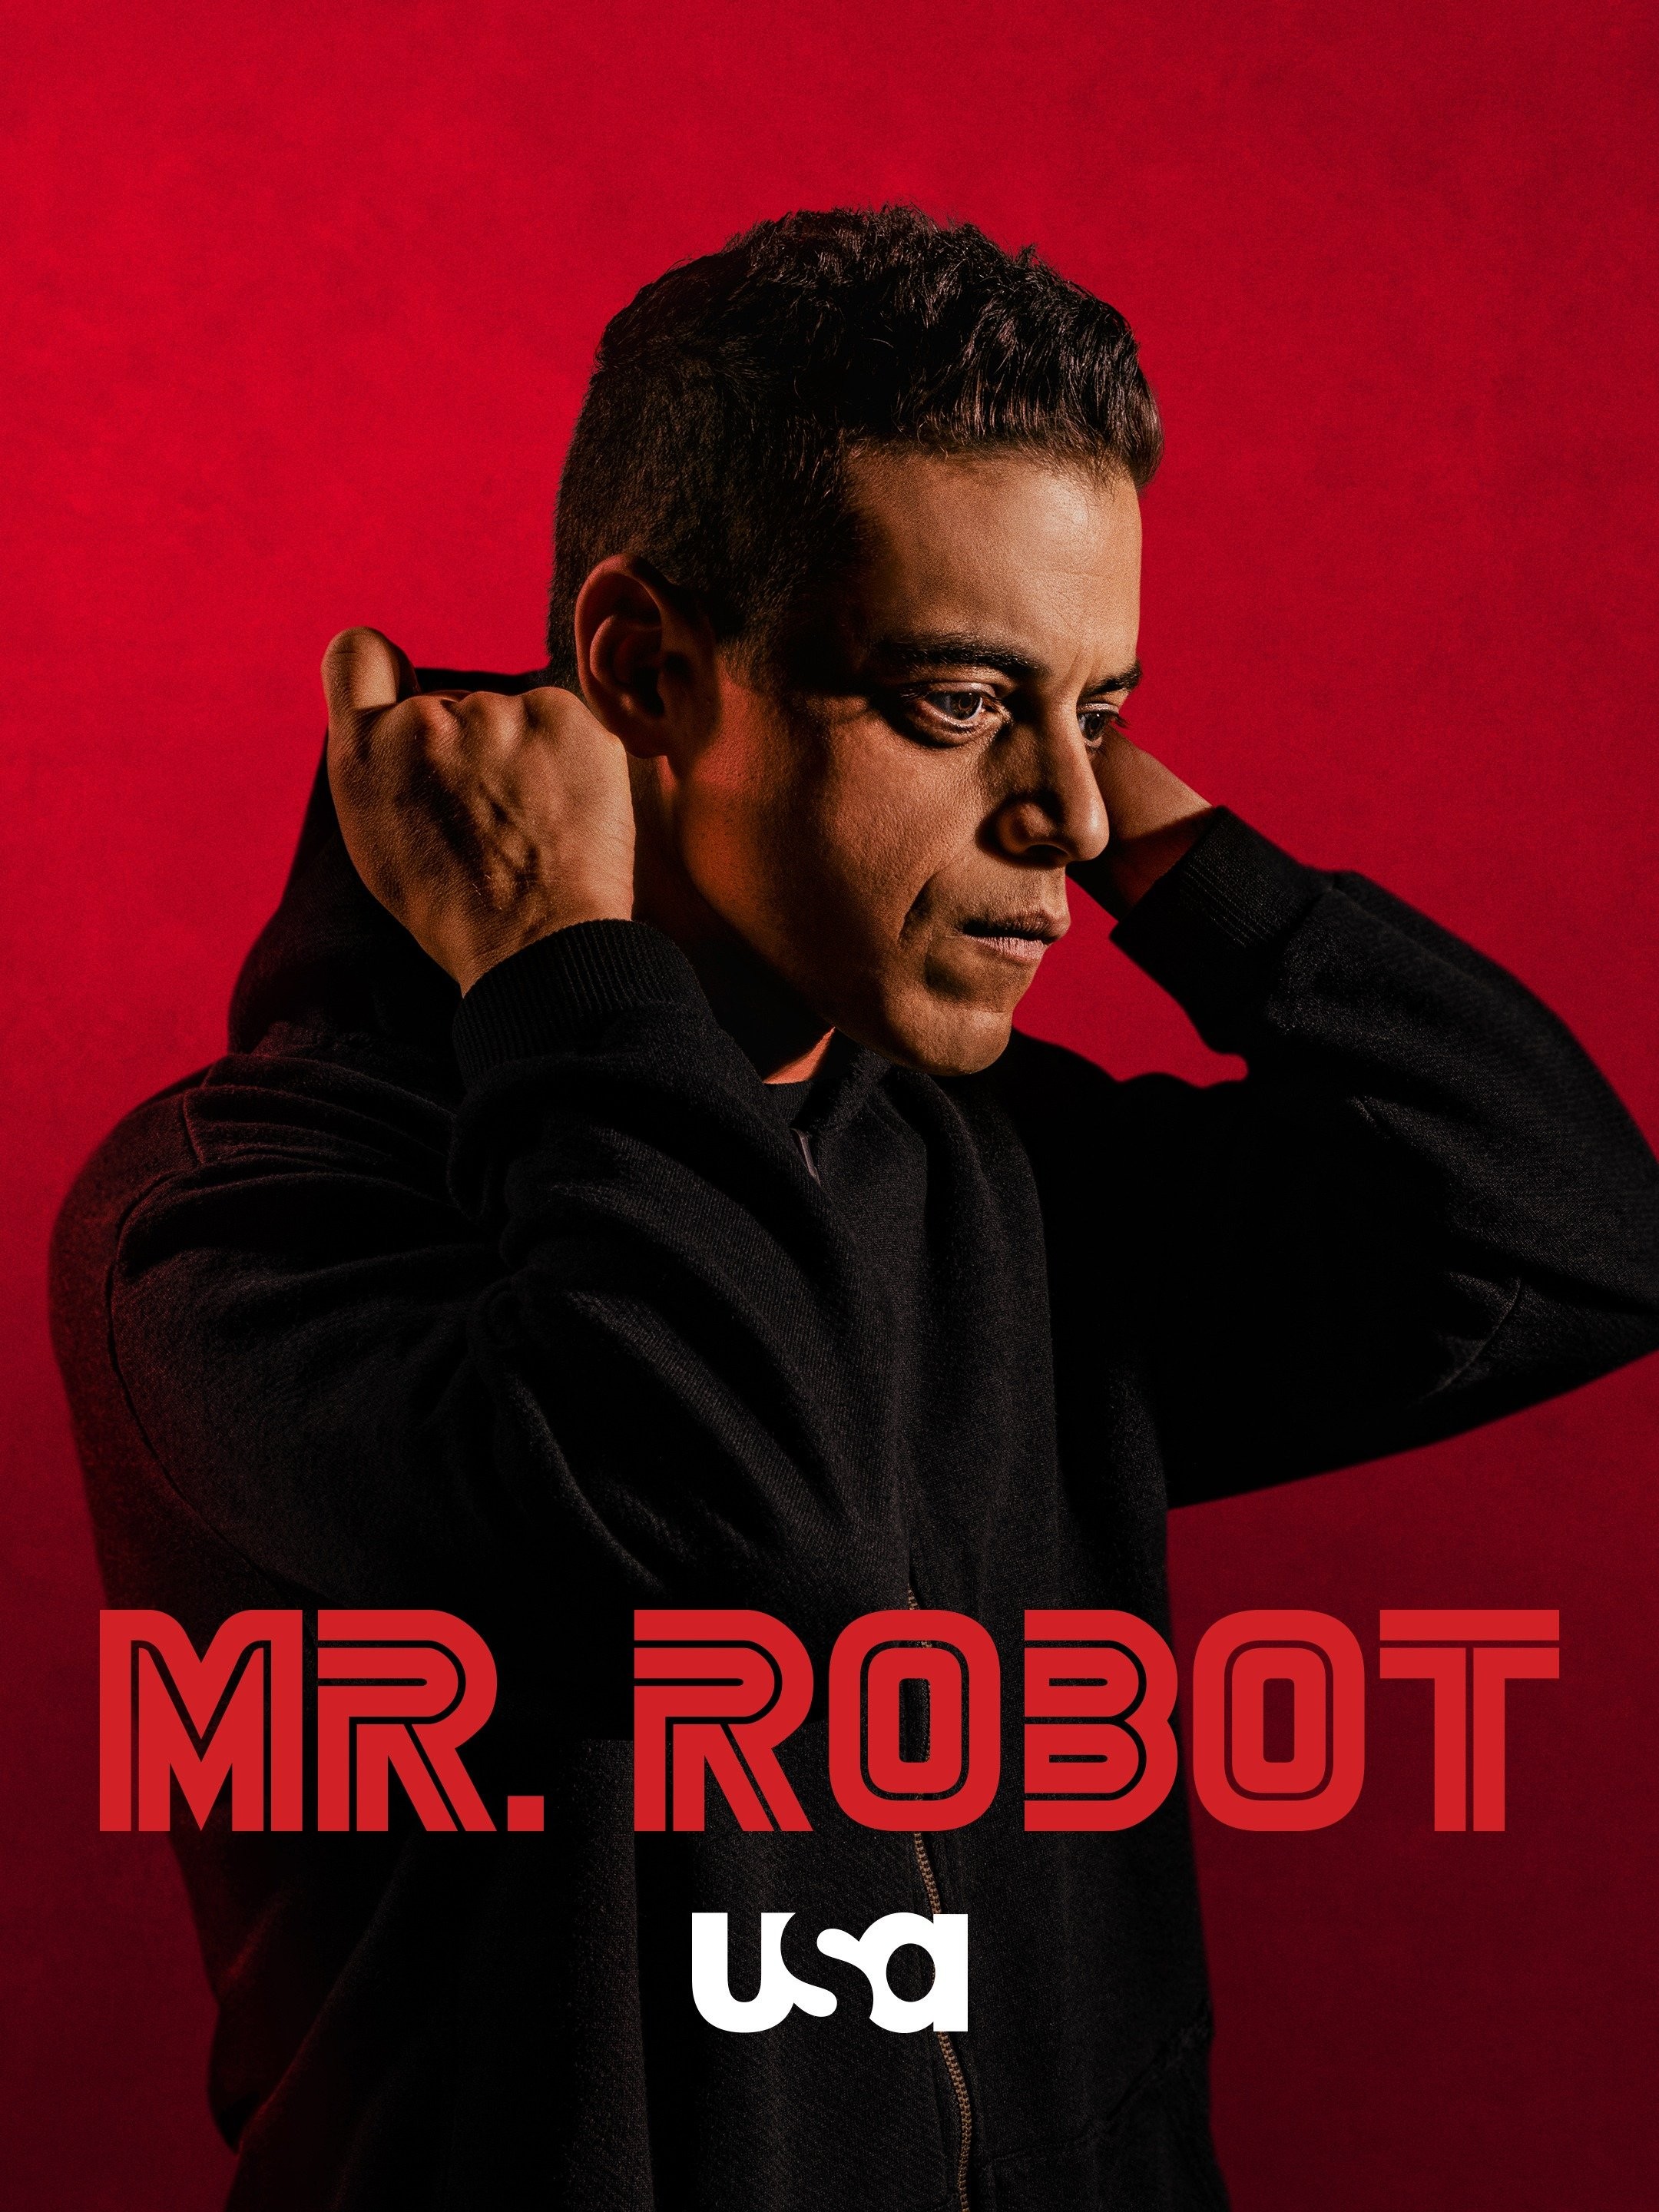 Mr. Robot: Official Extended Trailer - Season 1 